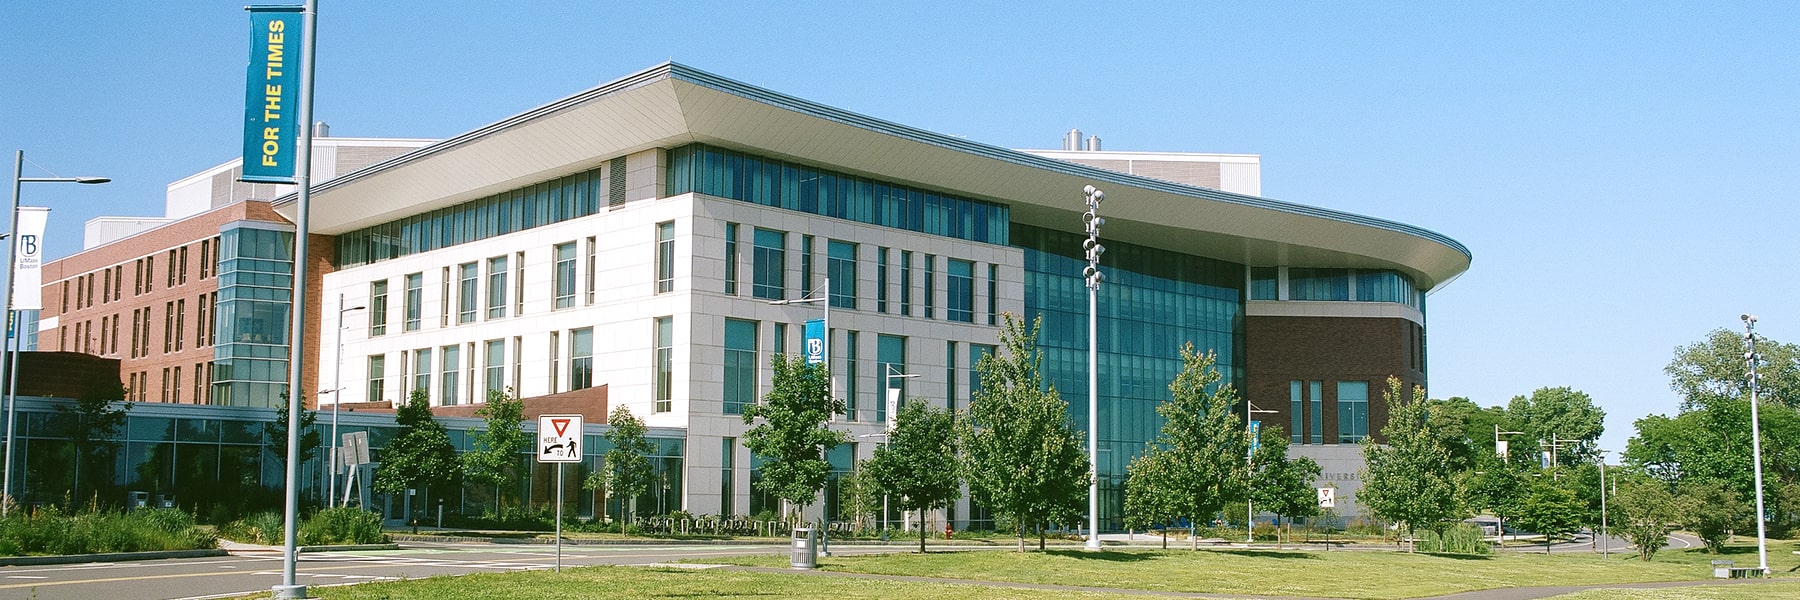 Campus Center.